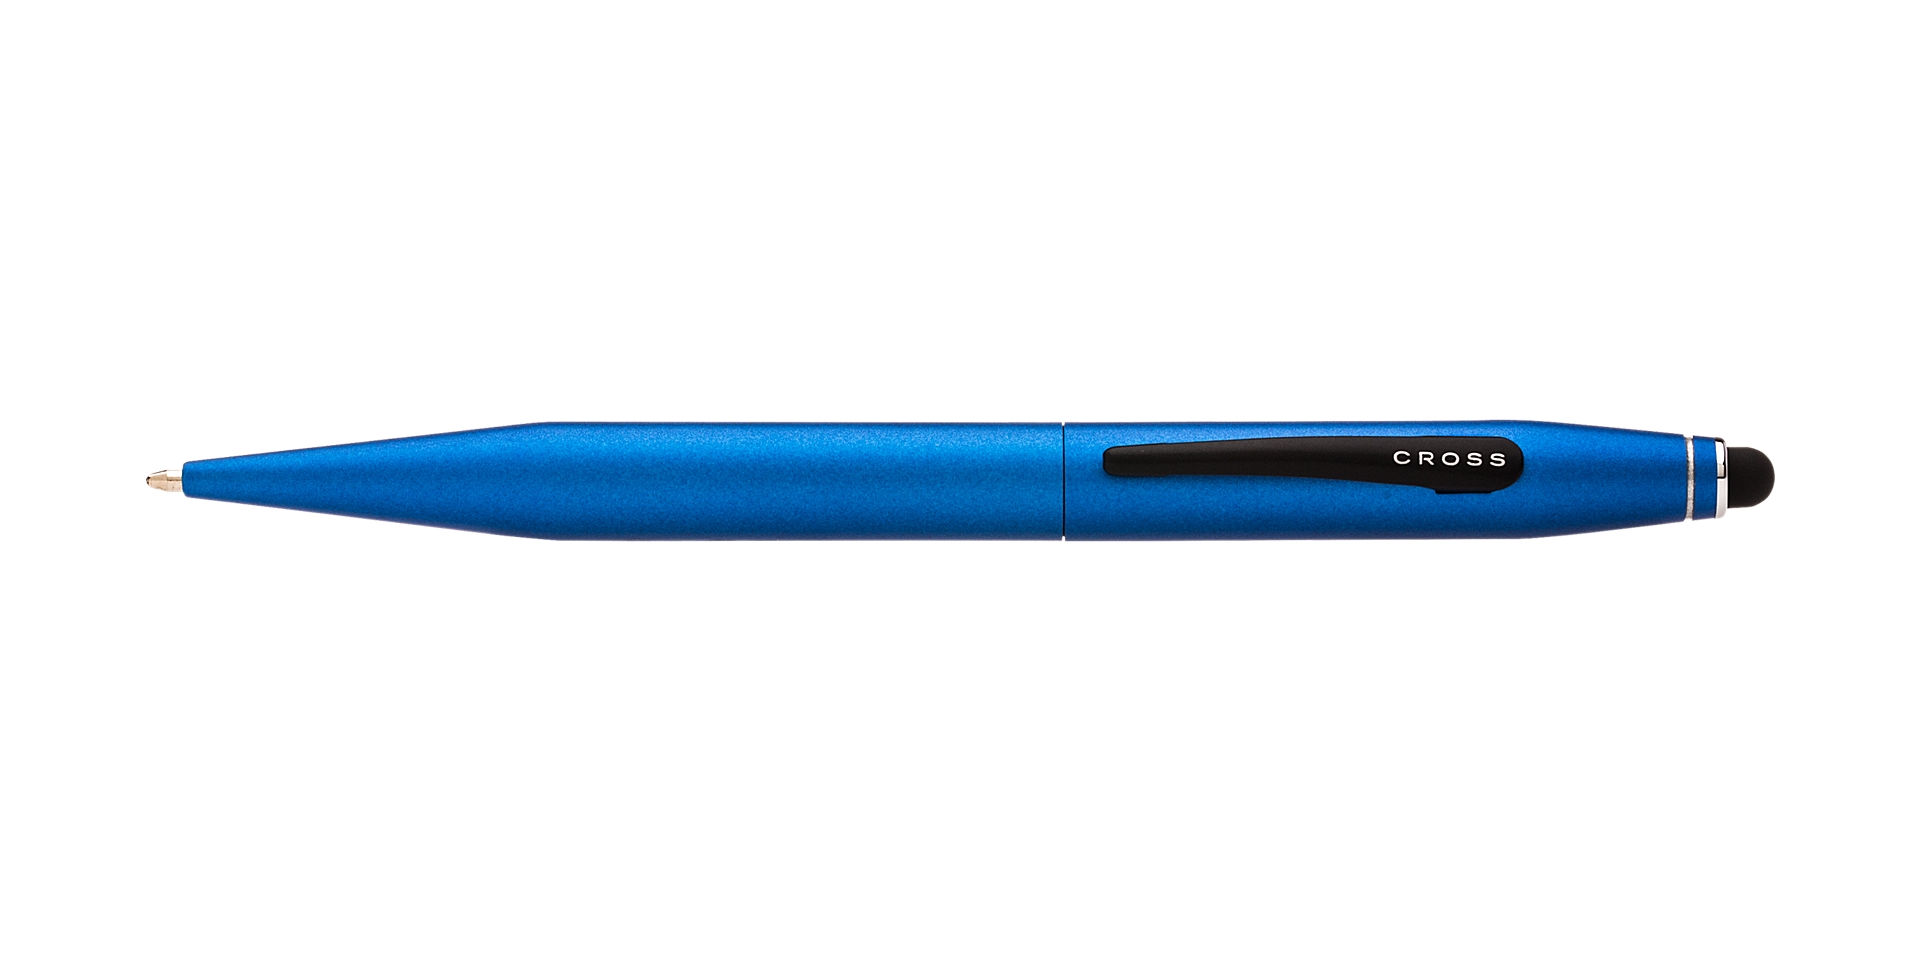 Cross Tech 2 Metallic Blue Ballpoint Pen Picture